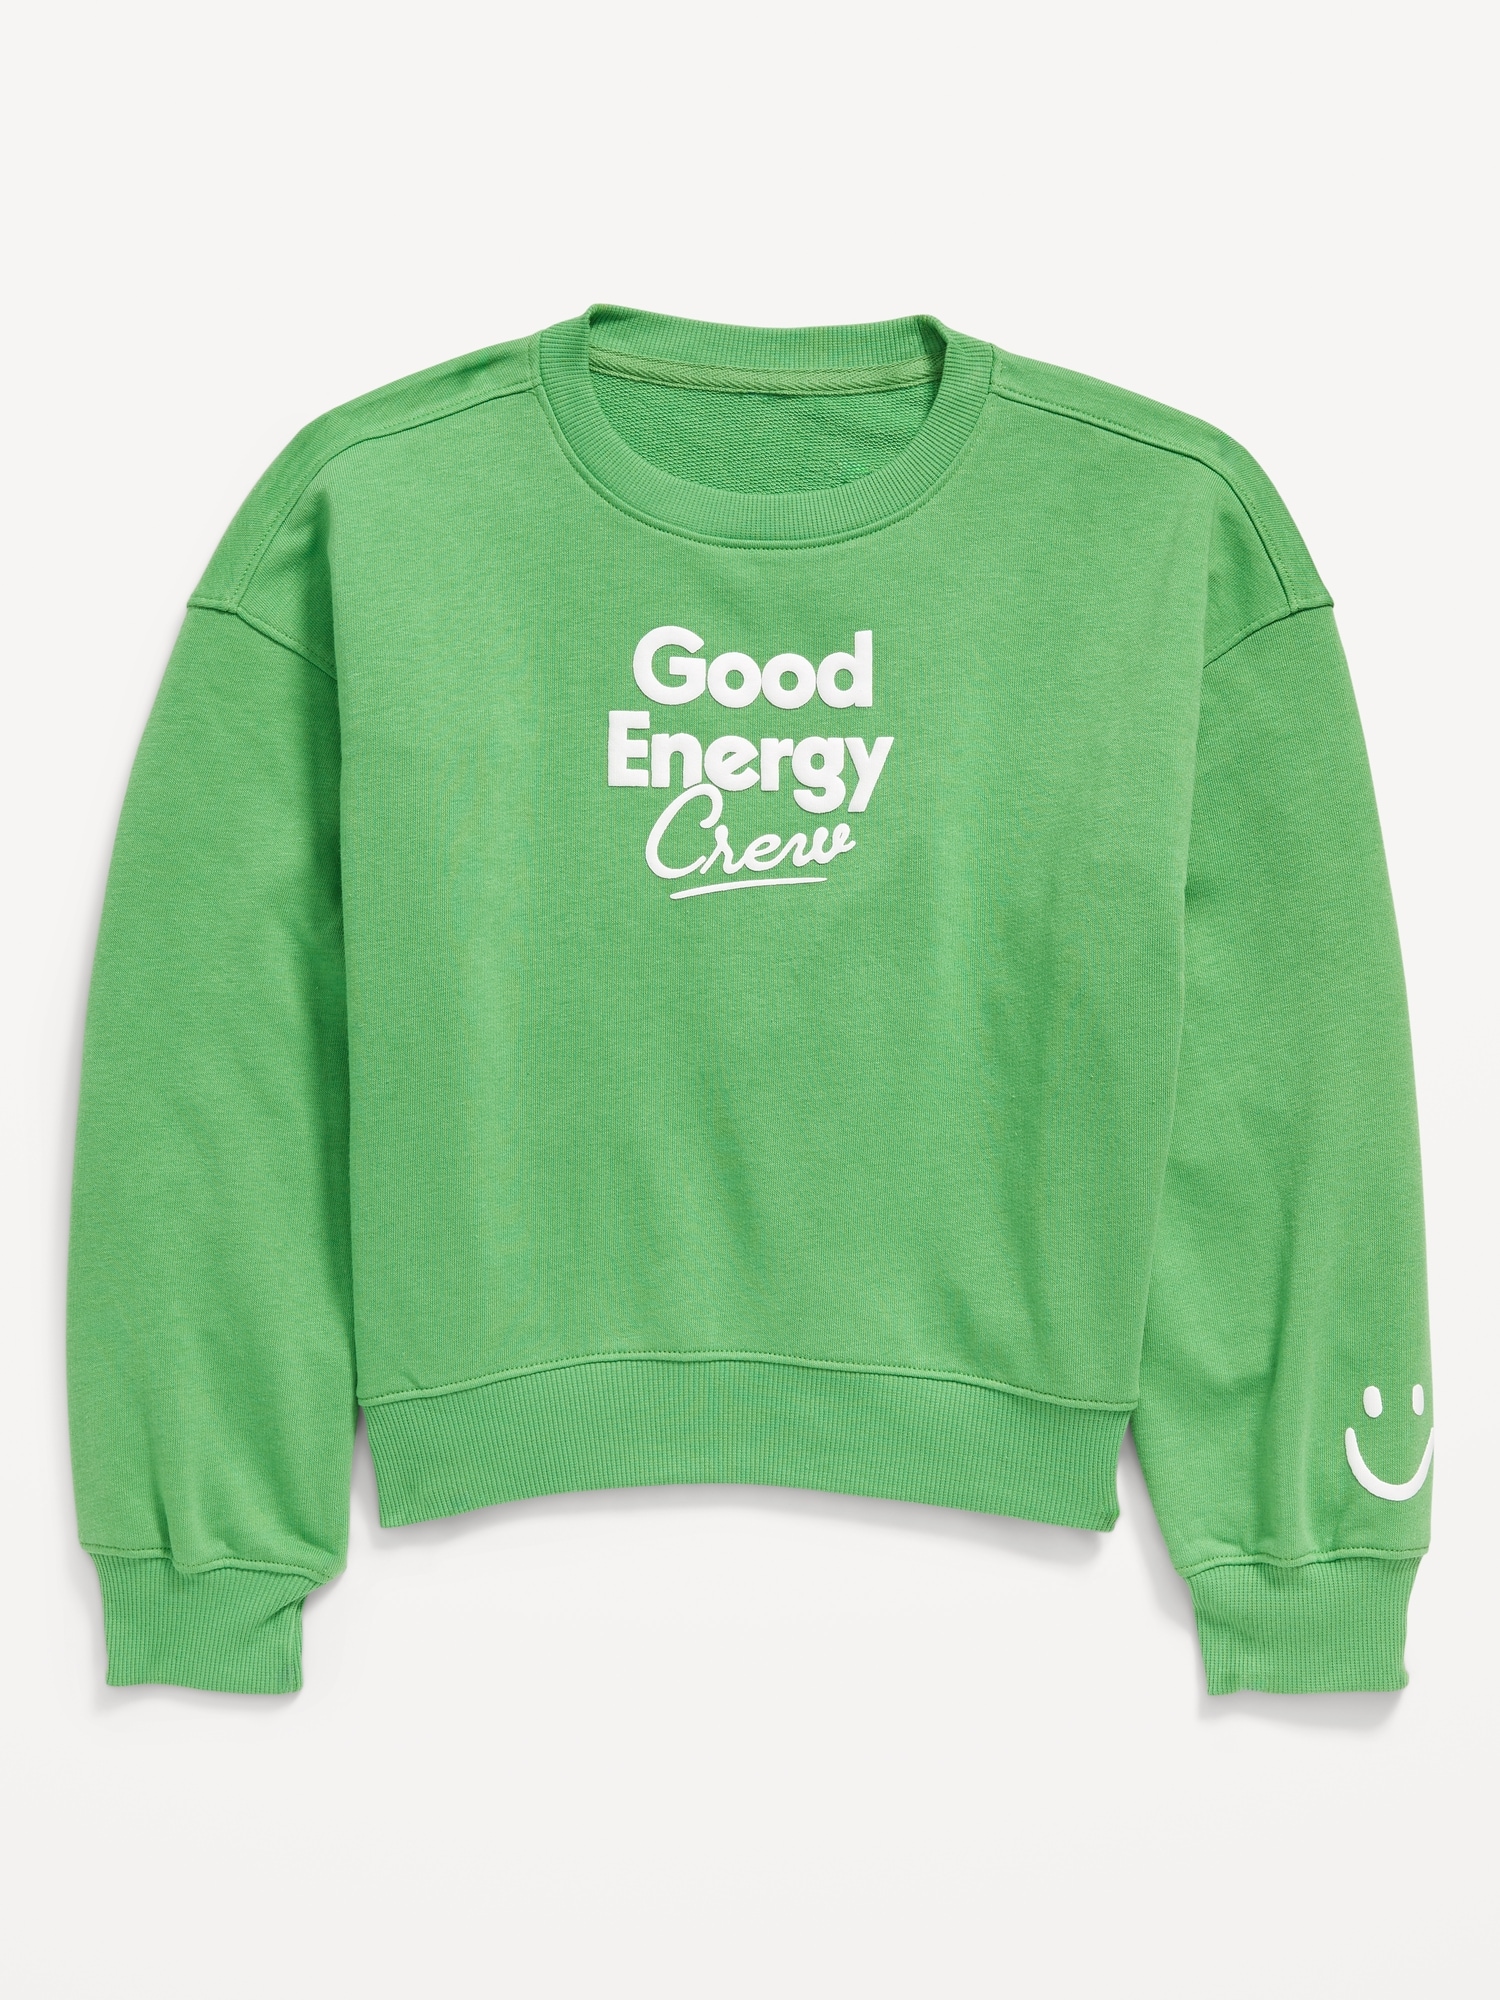 올드네이비 Slouchy Crew-Neck Graphic Sweatshirt for Girls